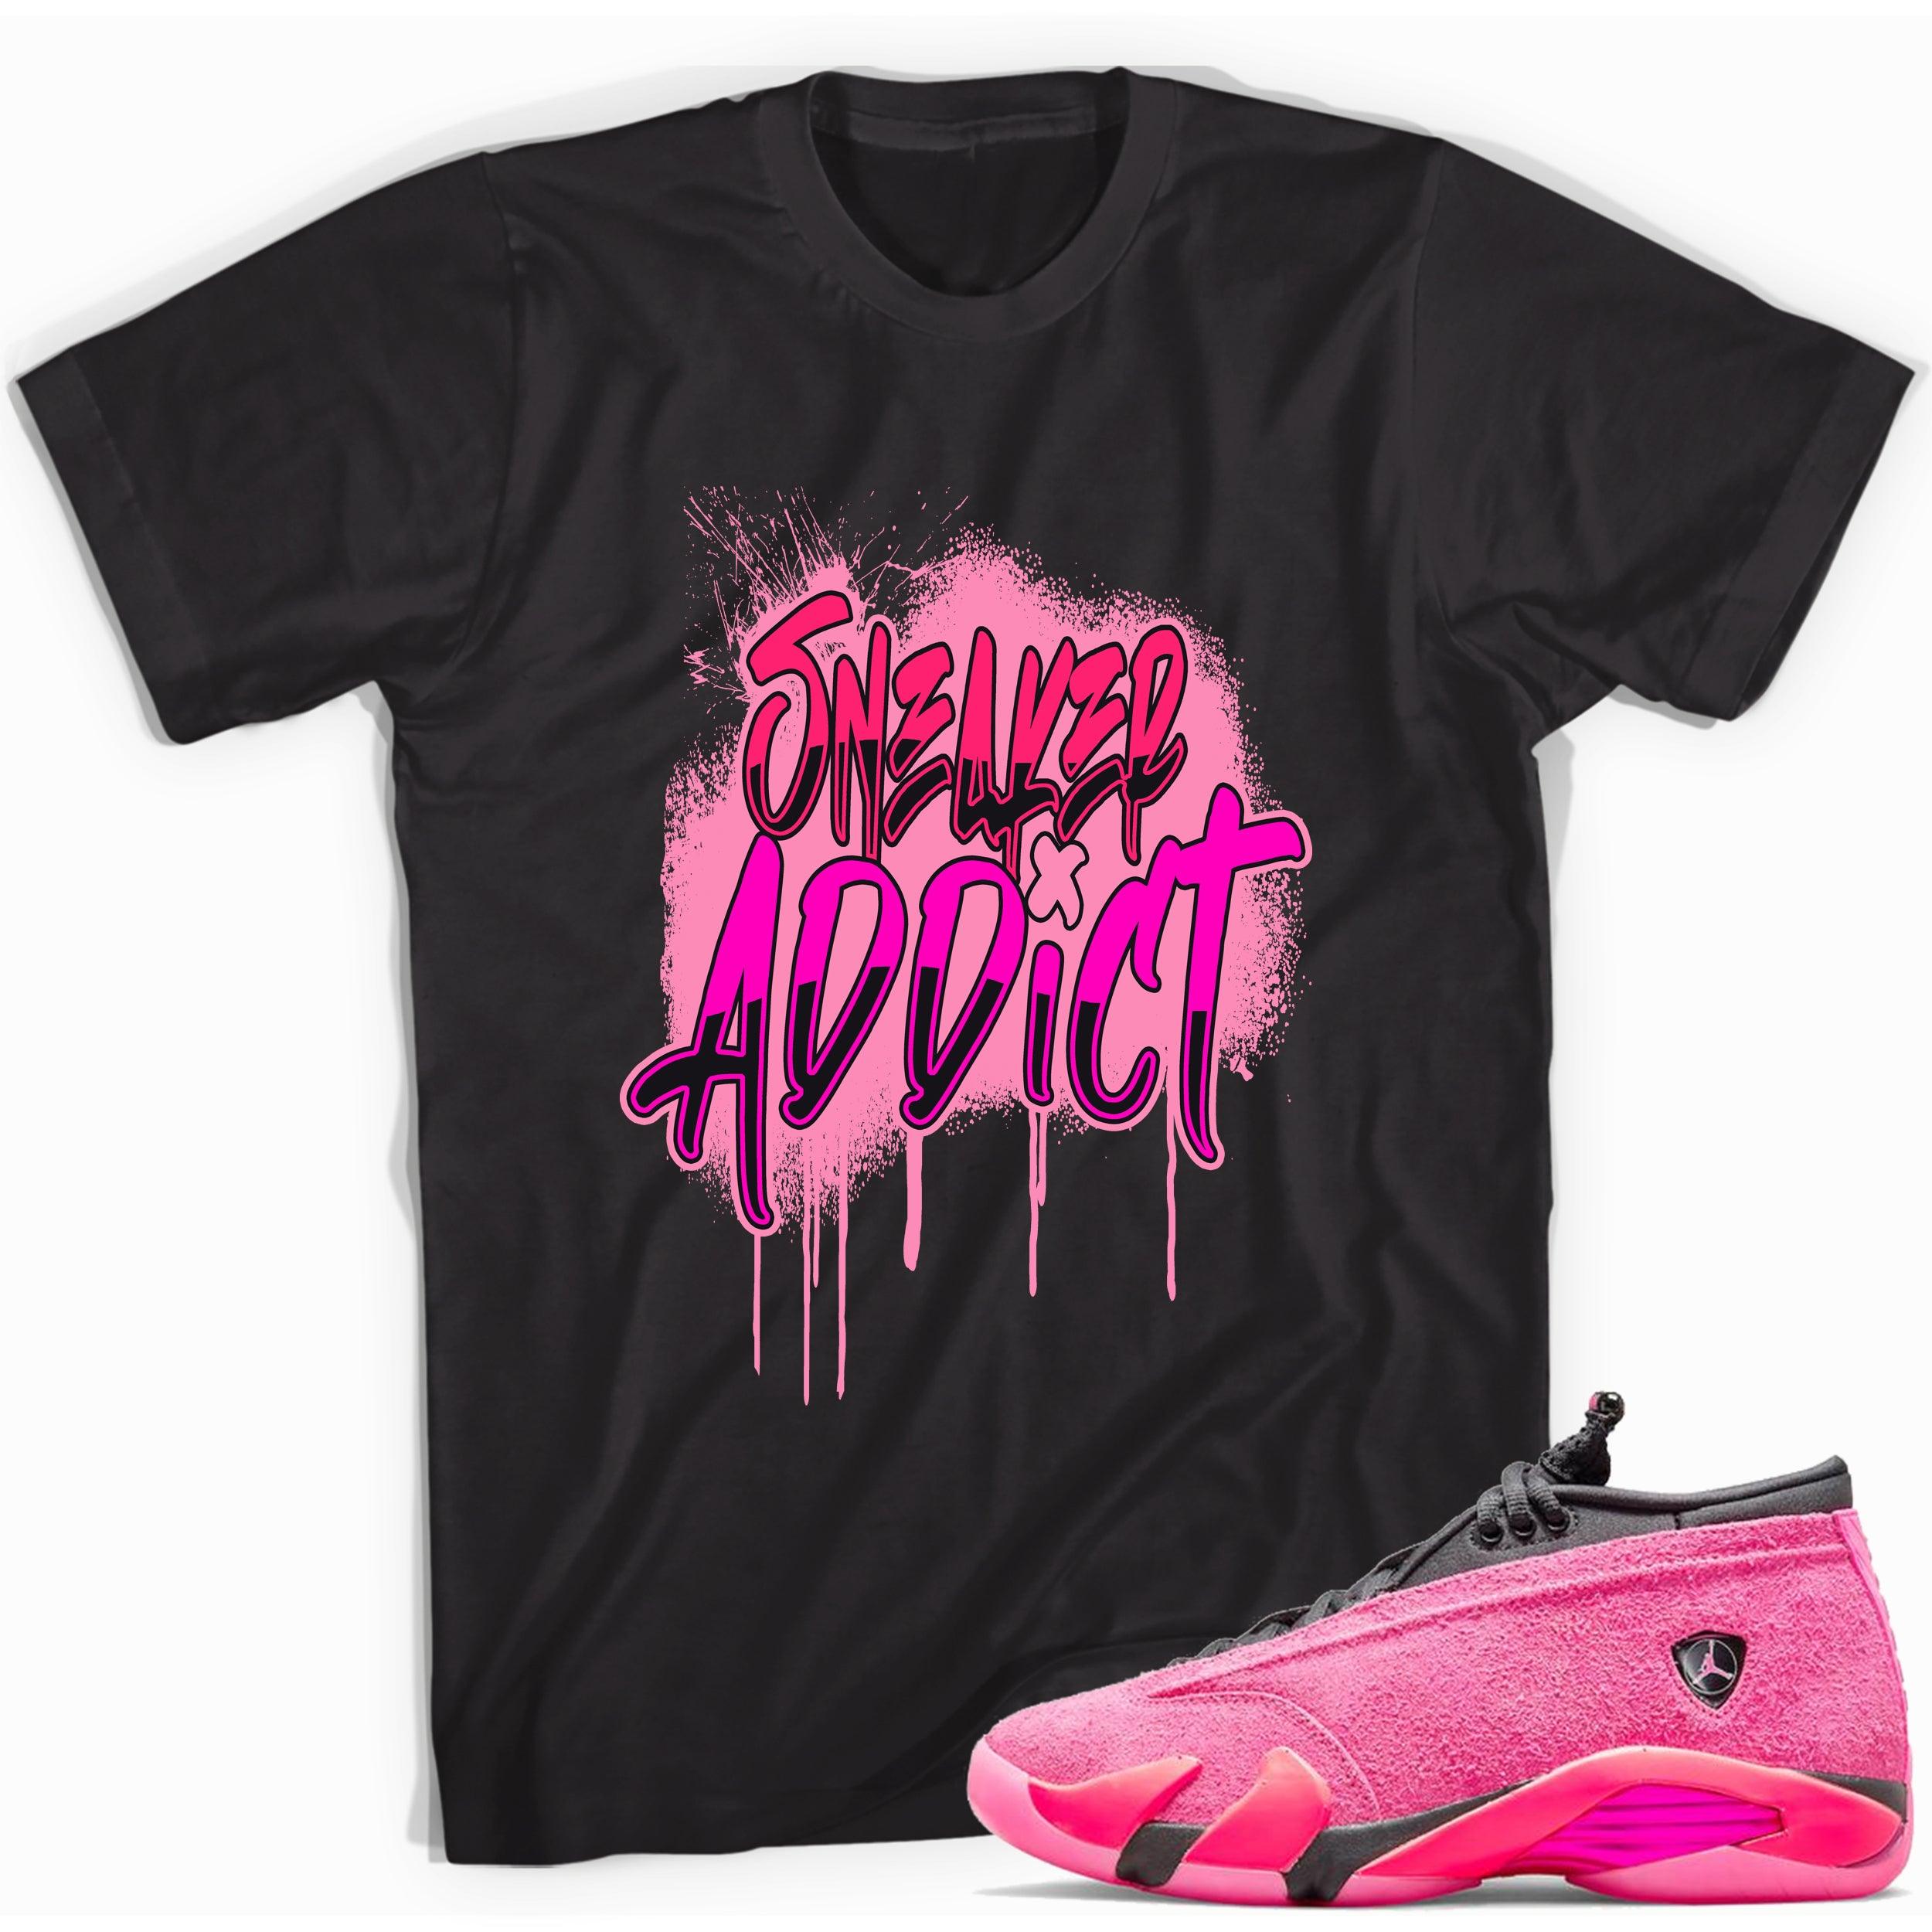 Black Sneaker Addict Shirt Jordan 14 Low Shocking Pink photo